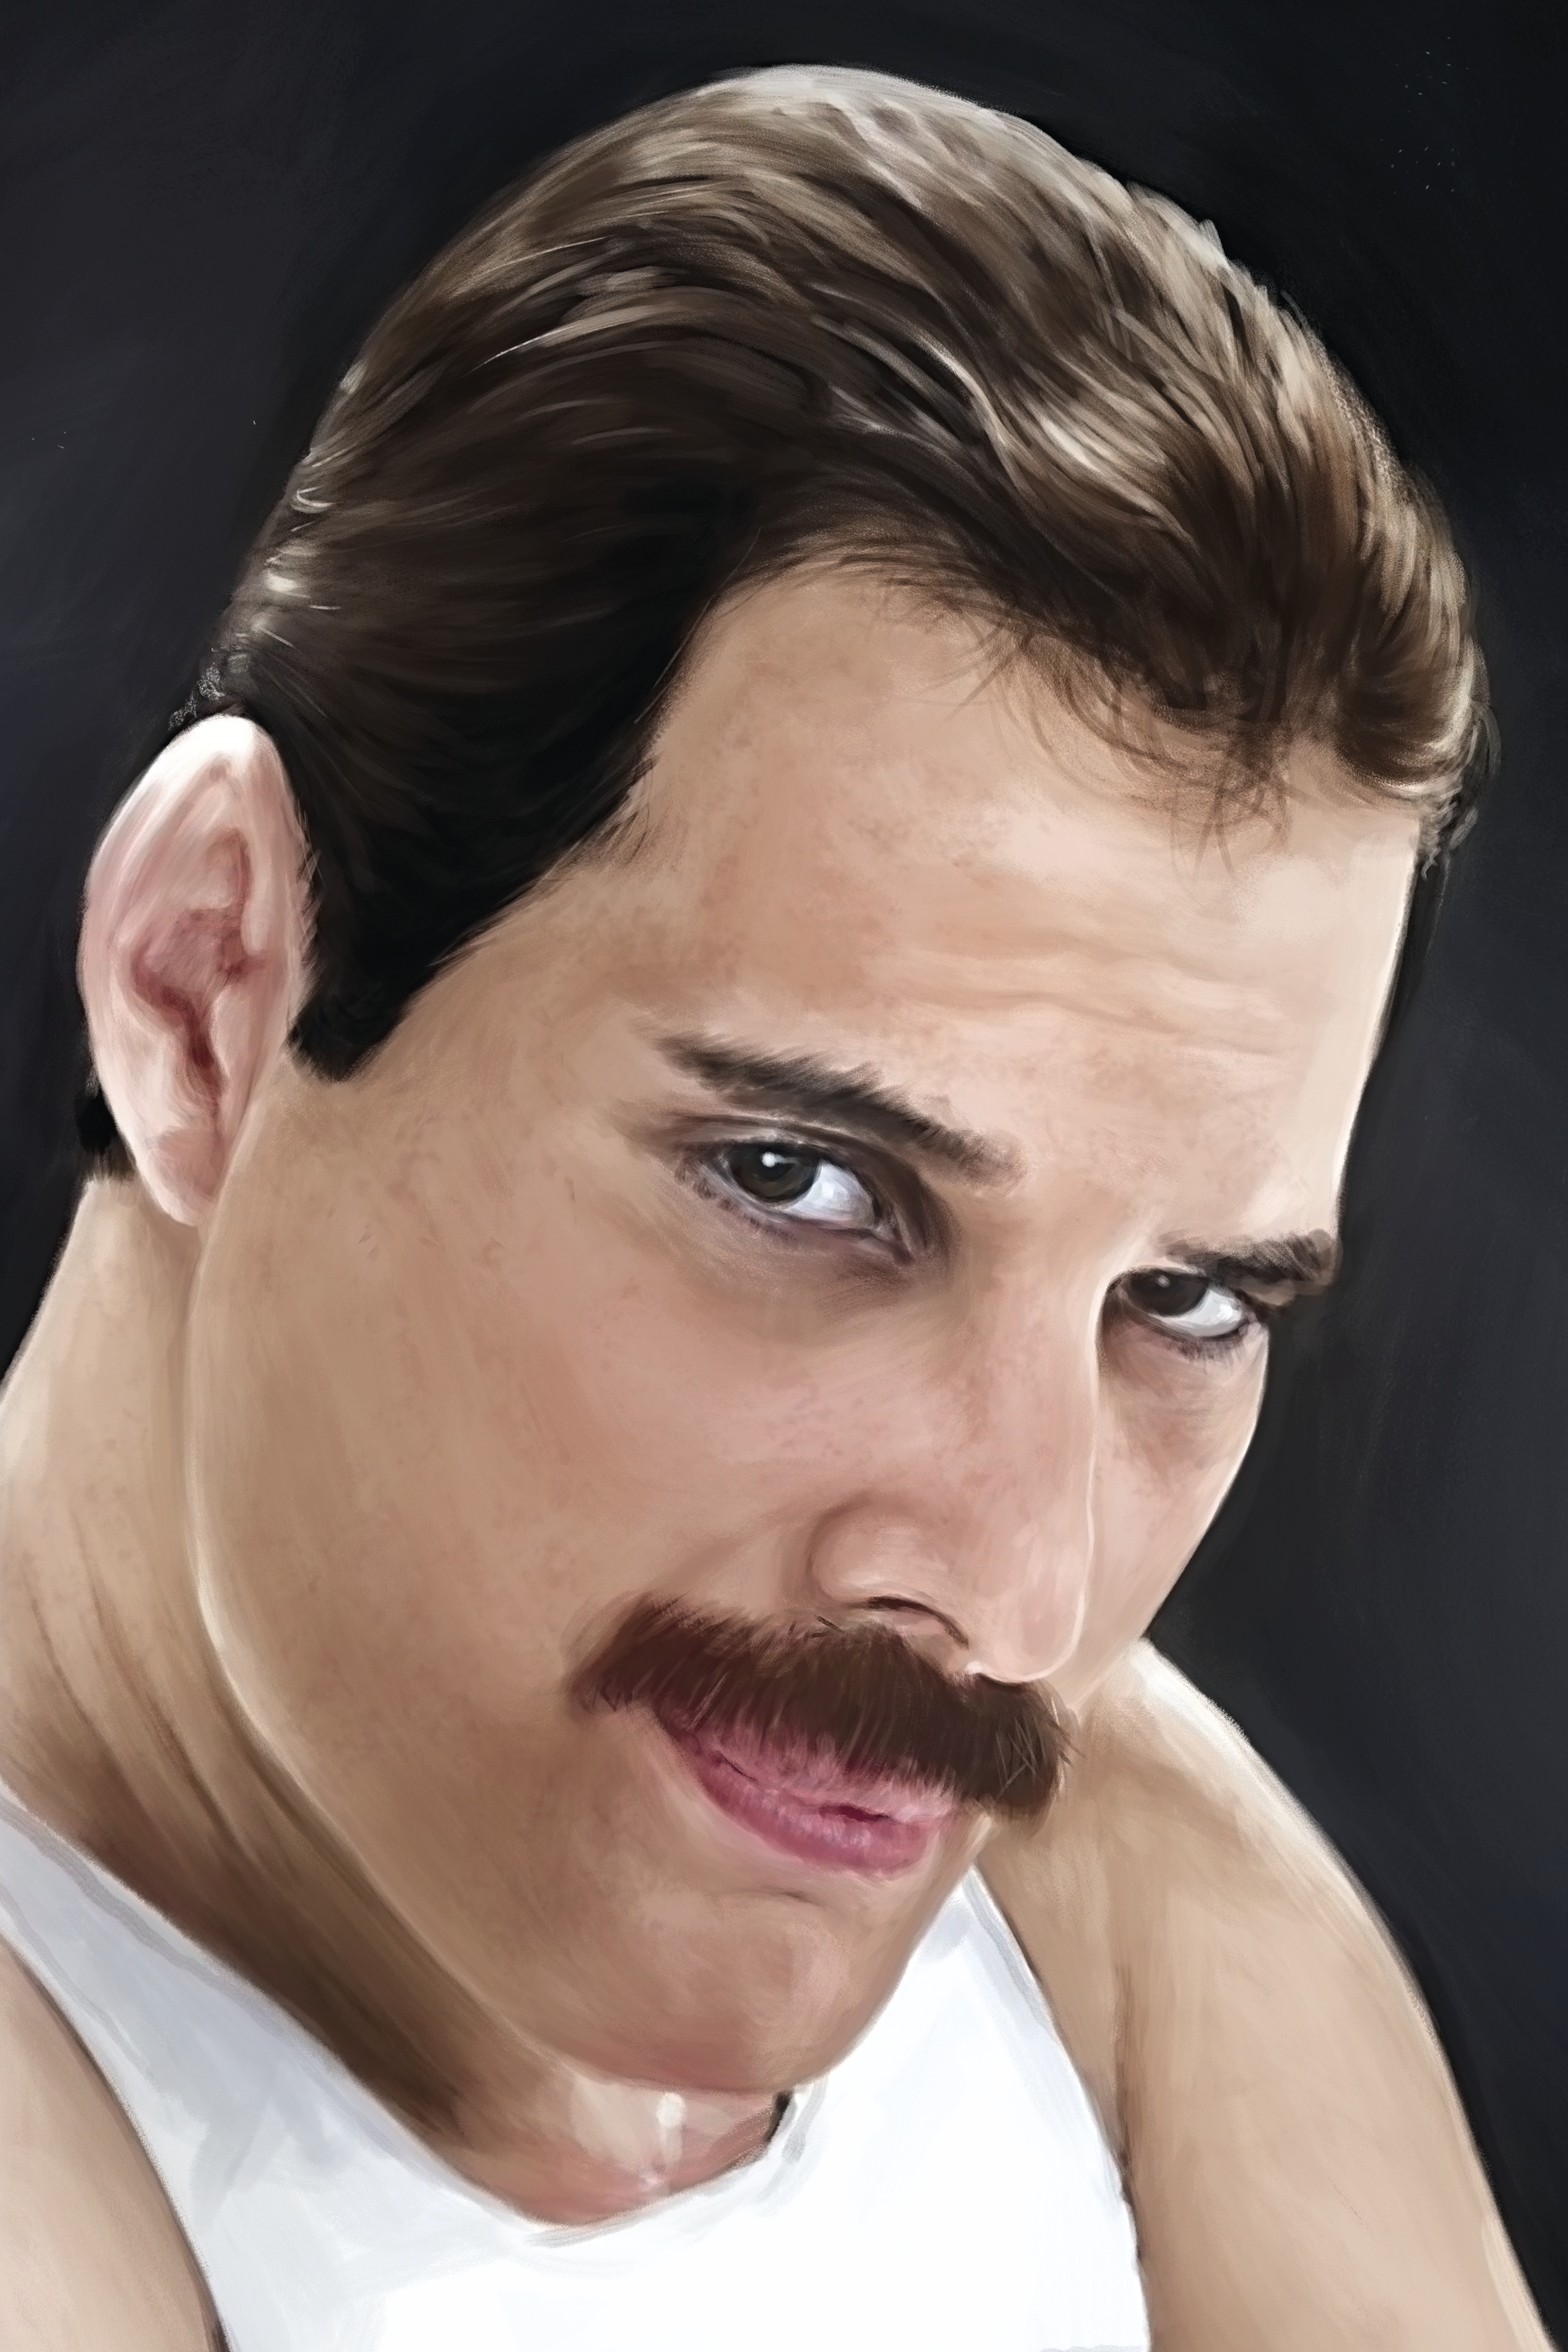 Freddie Mercury - reprodukce kresby, kolorovaná - NA OBJEDNÁVKU DO 5 DNŮ